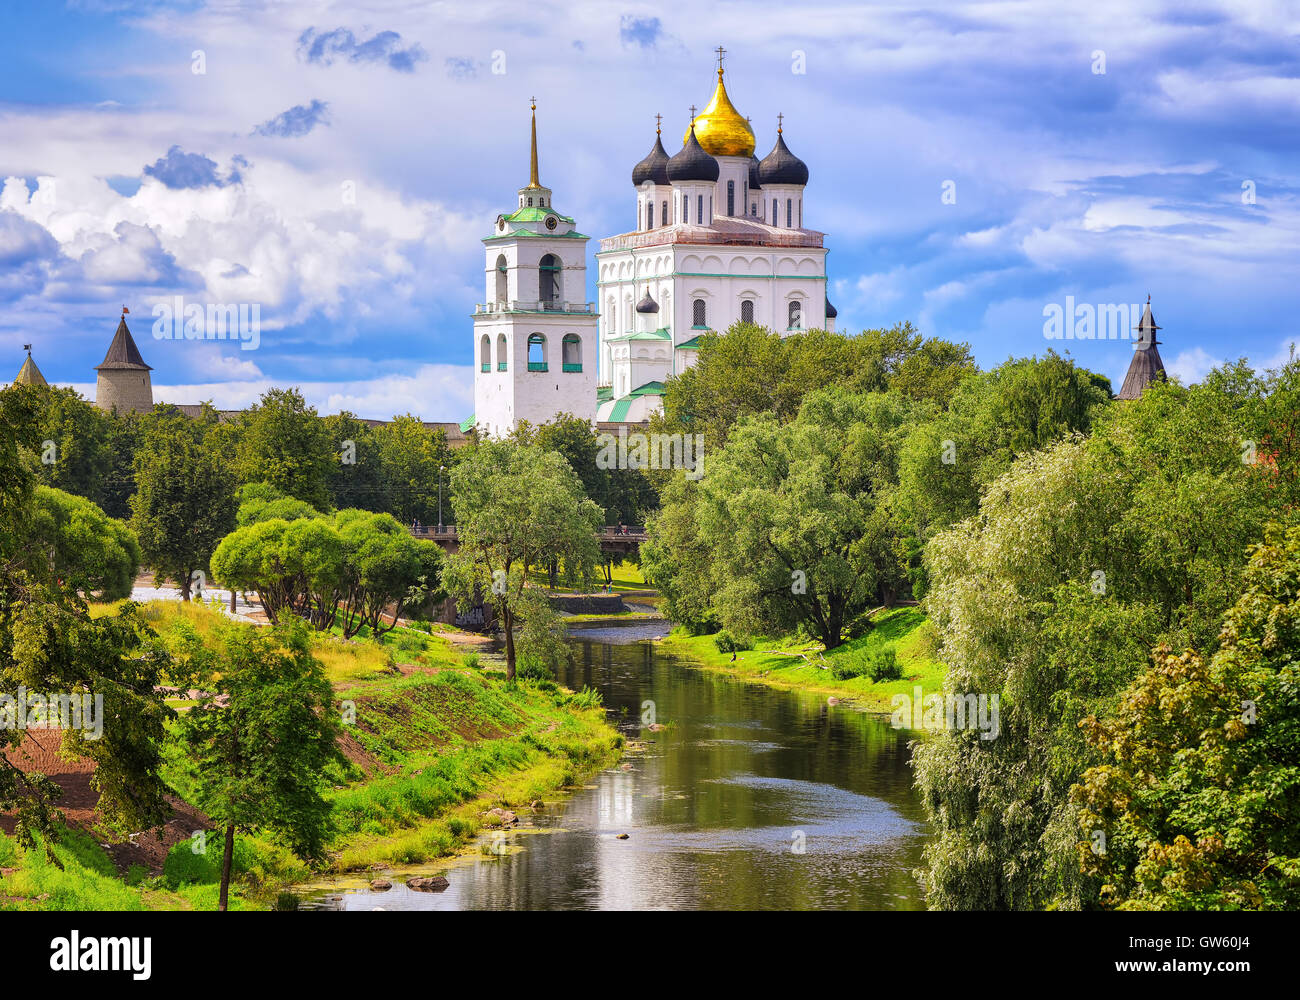 Die goldene Kuppel der Trinity Church und Türme der Pskower Kreml (Krom) reflektiert in den Fluss, Pskow, Russland. Stockfoto